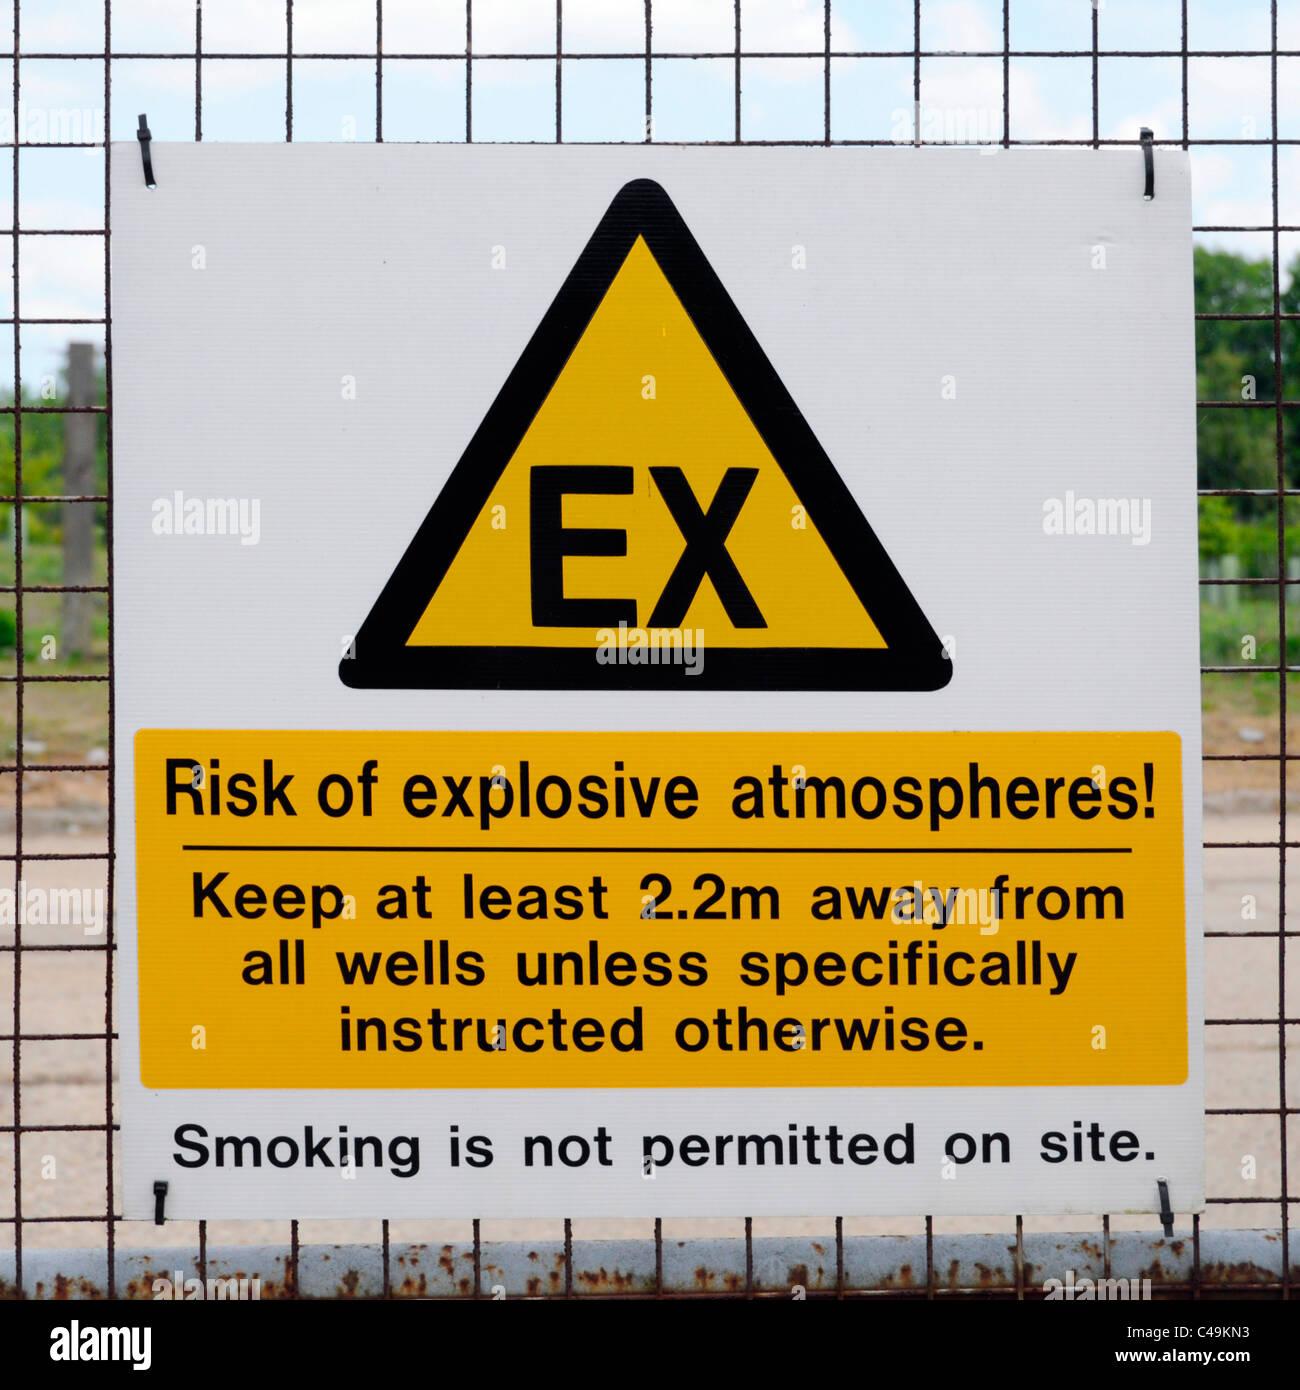 Abfallwirtschaft explosionsfähige Atmosphäre Warnzeichen auf geschlossenen Deponie nach Landschaftsbau & gut Installationen im ländlichen Gebiet von Essex England Großbritannien Stockfoto